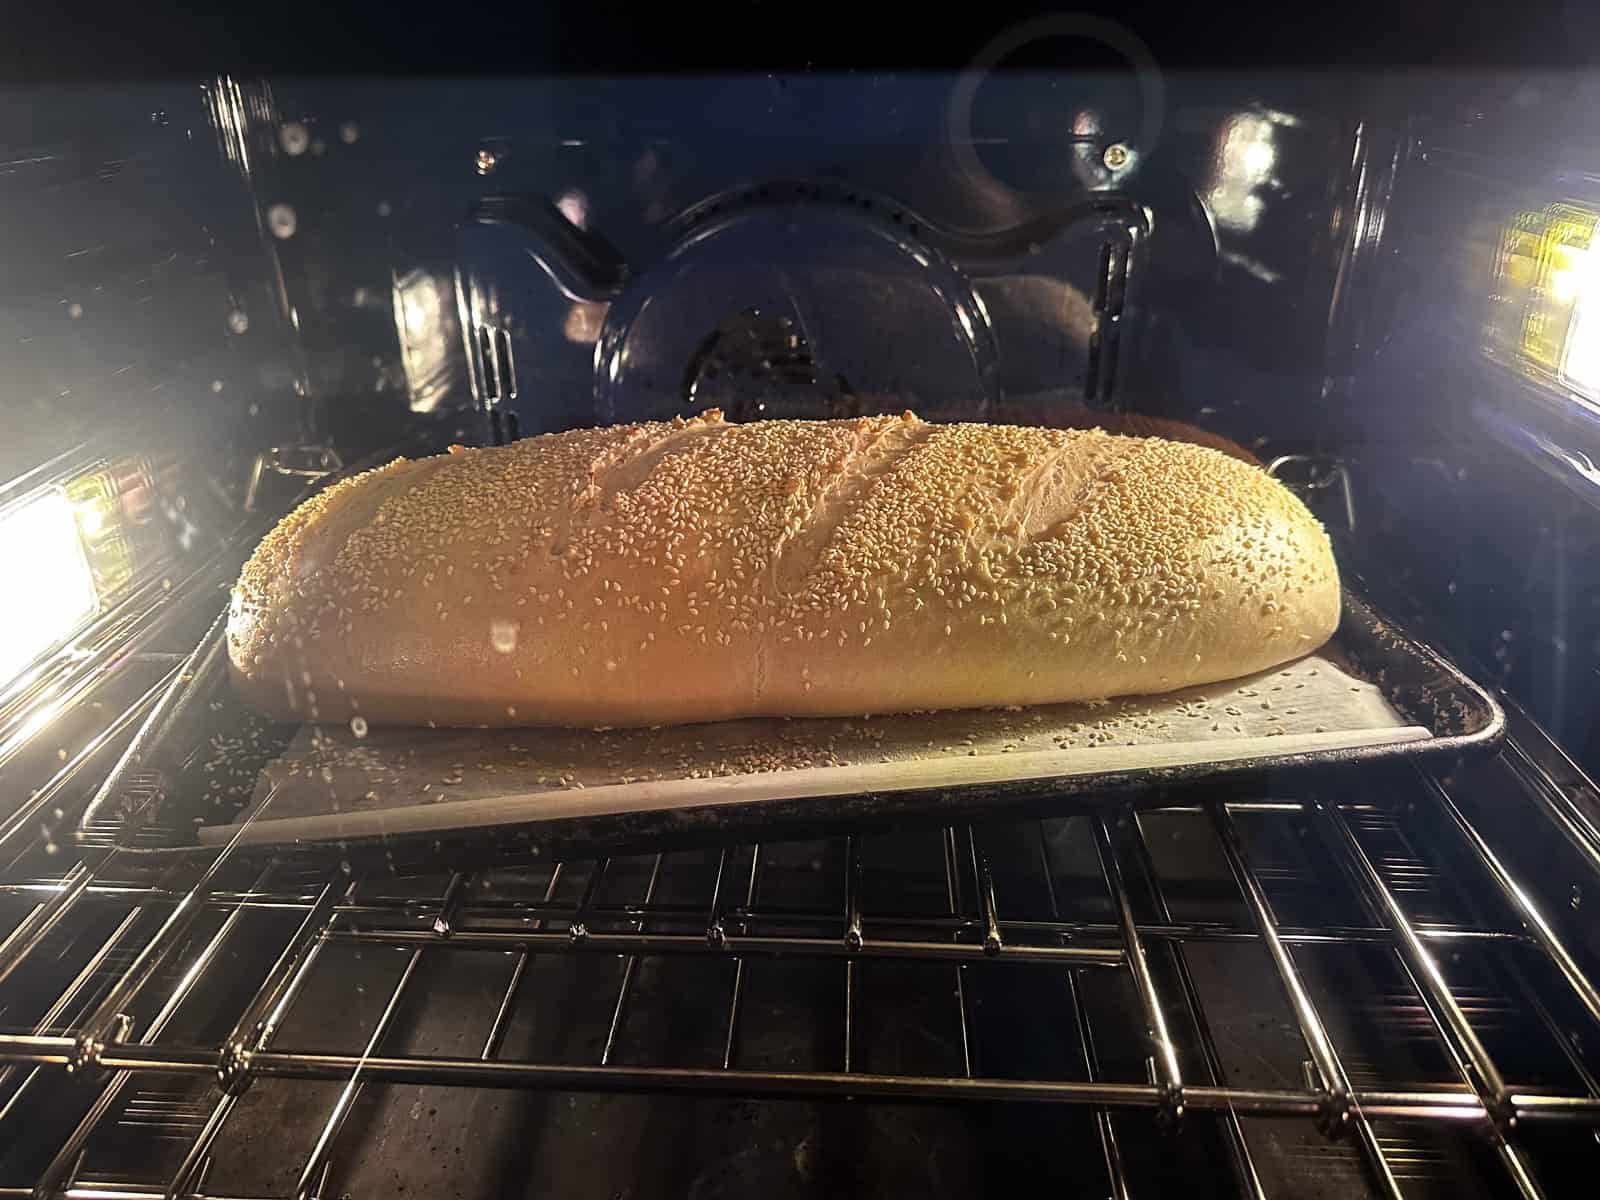 Italian bread in oven baking. 